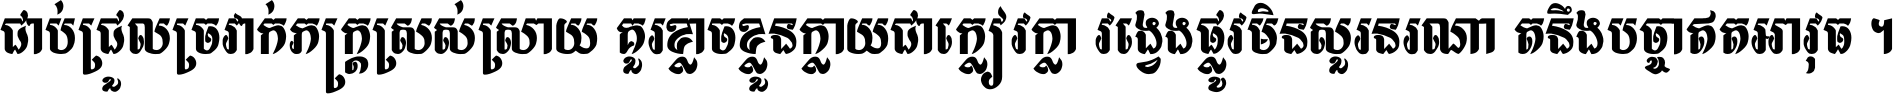 Khmer OS Niroth